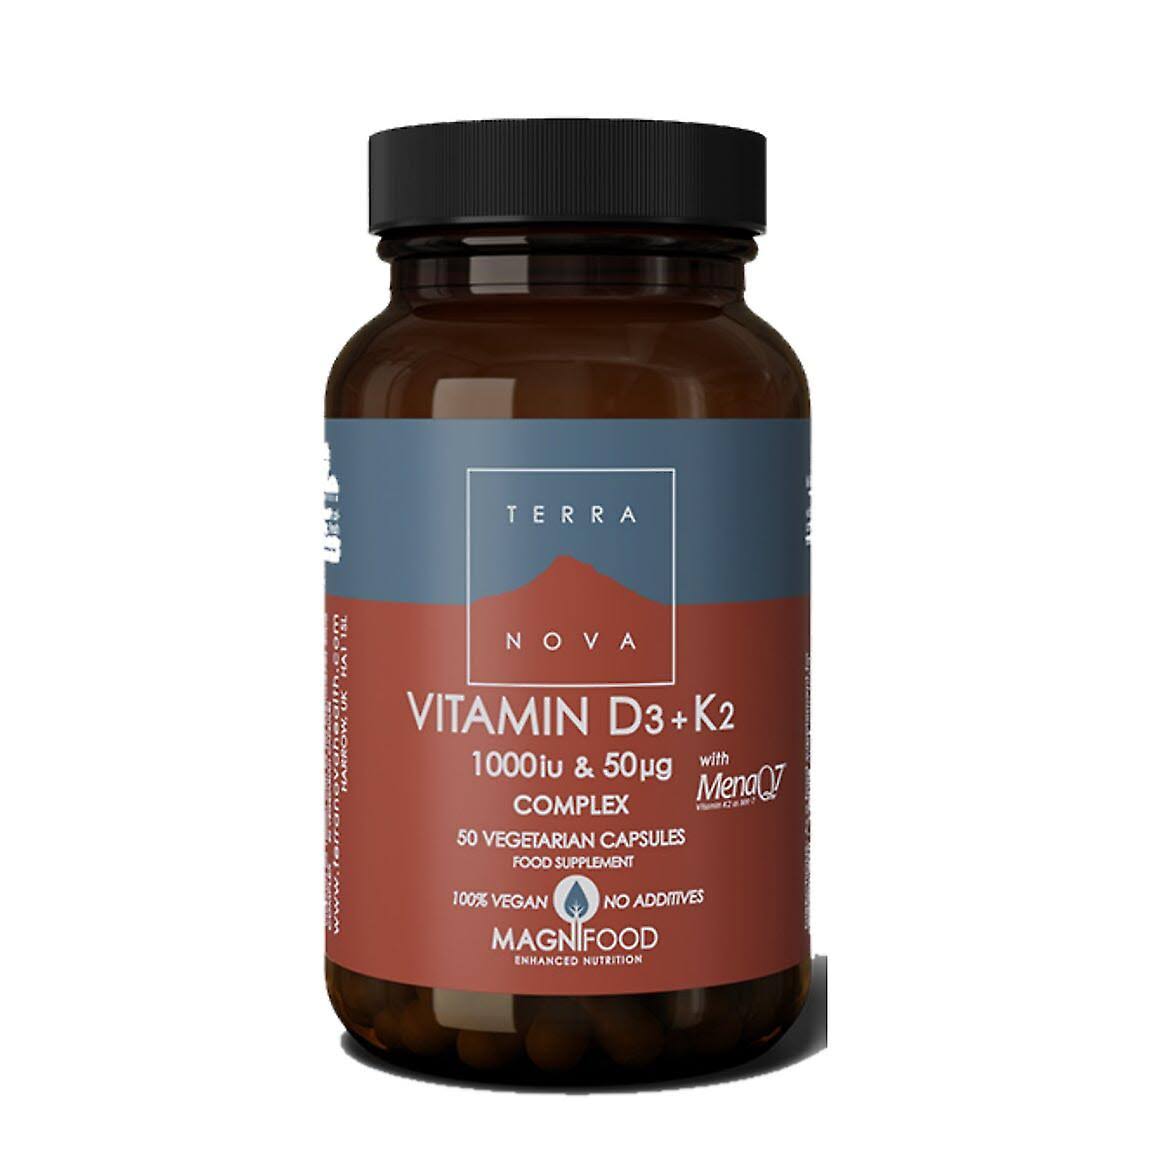 Terra Nova Vitamin D3 + K2 Complex 50 capsules